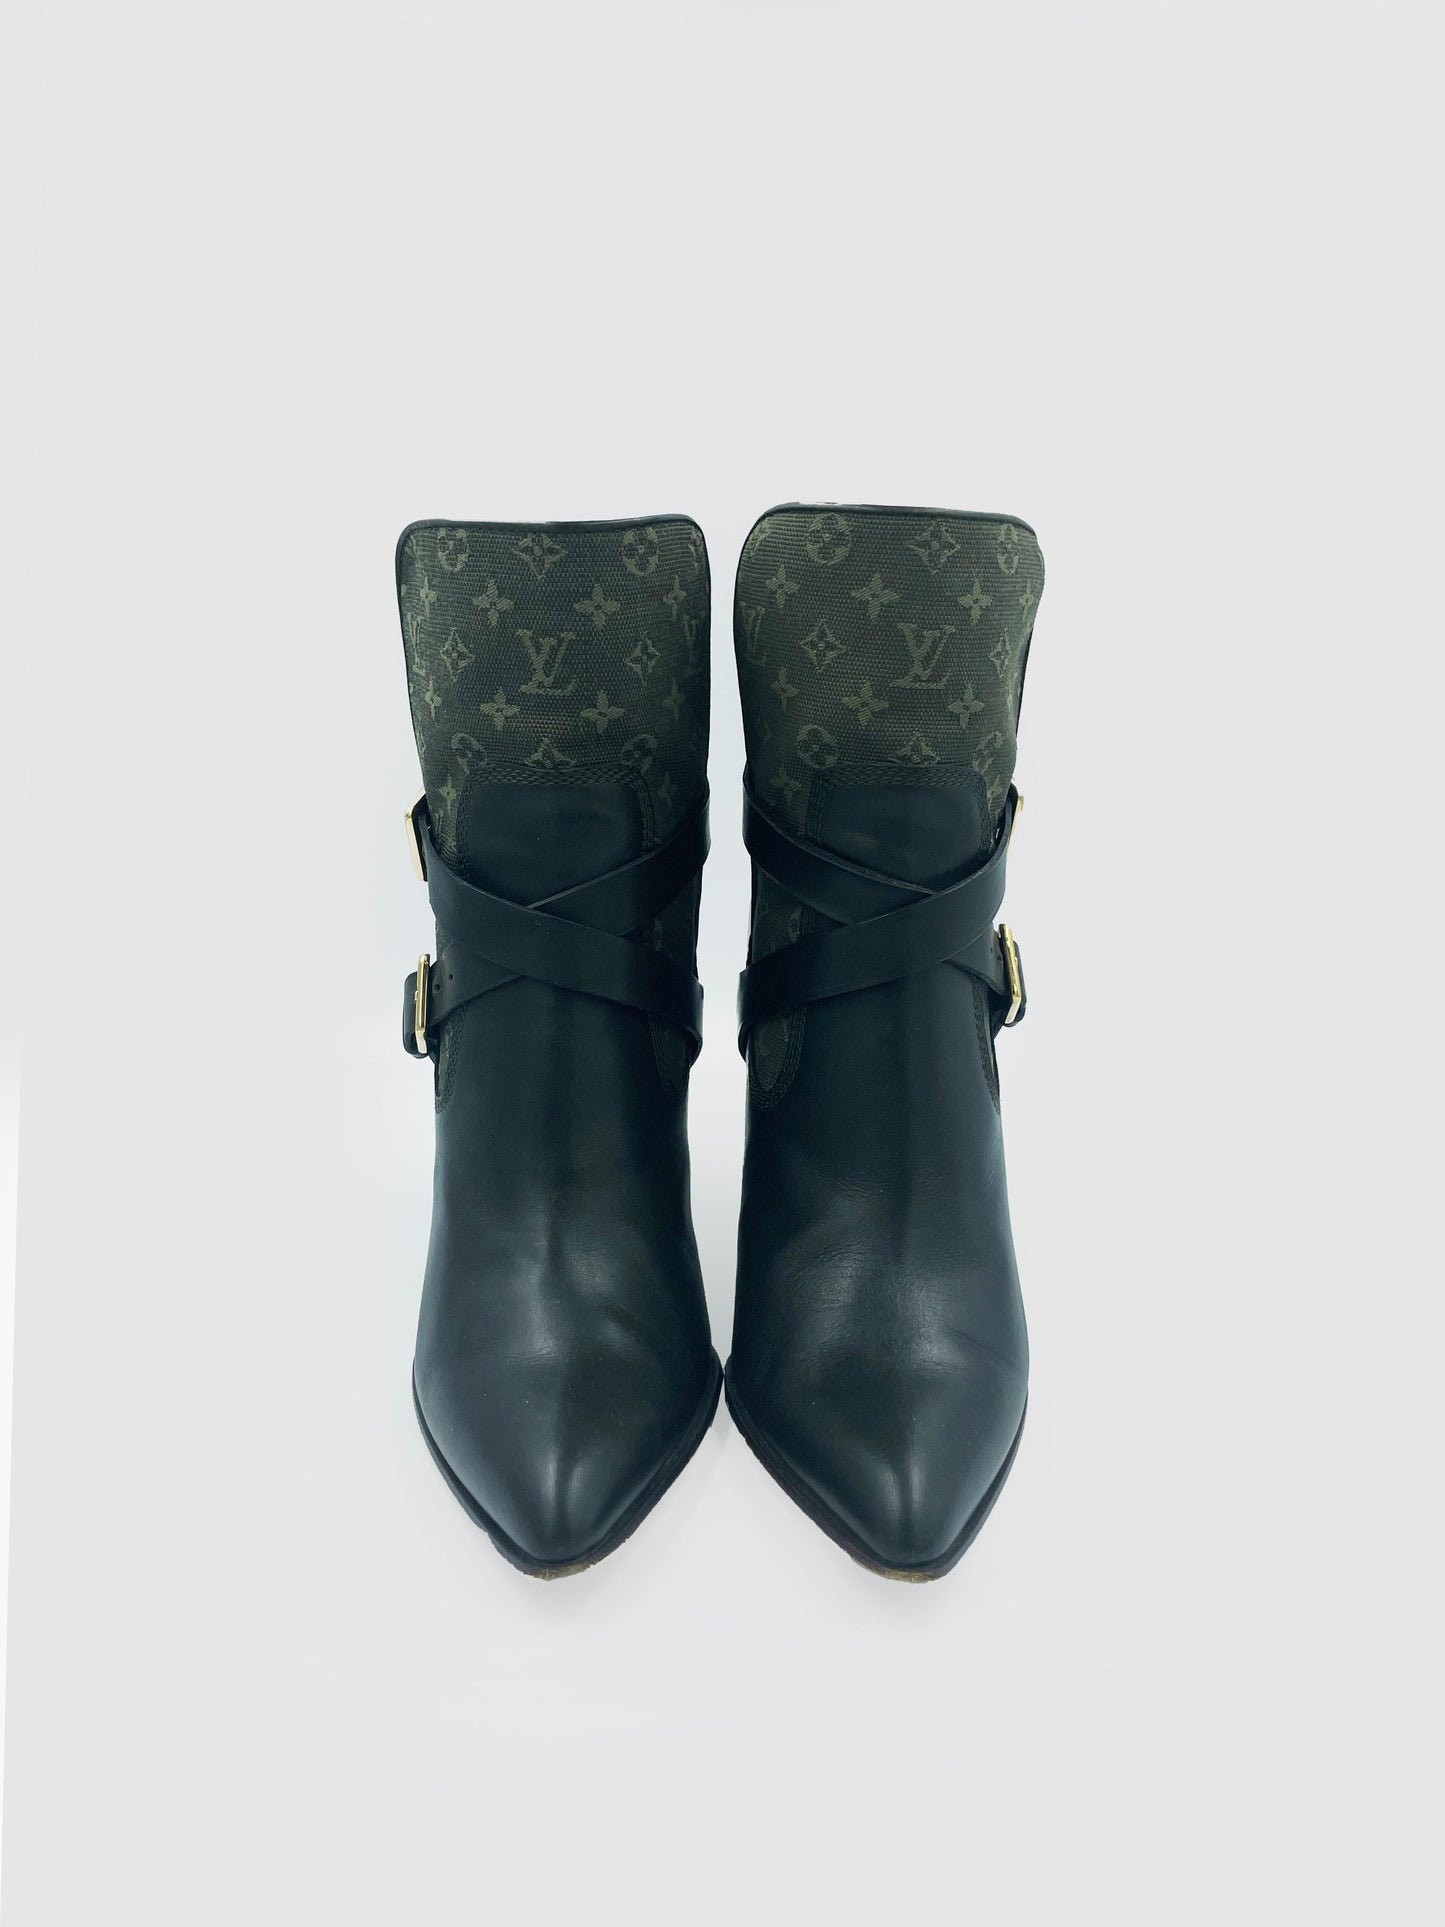 Louis Vuitton Monogram Denim Ankle Boots - Size 35.5